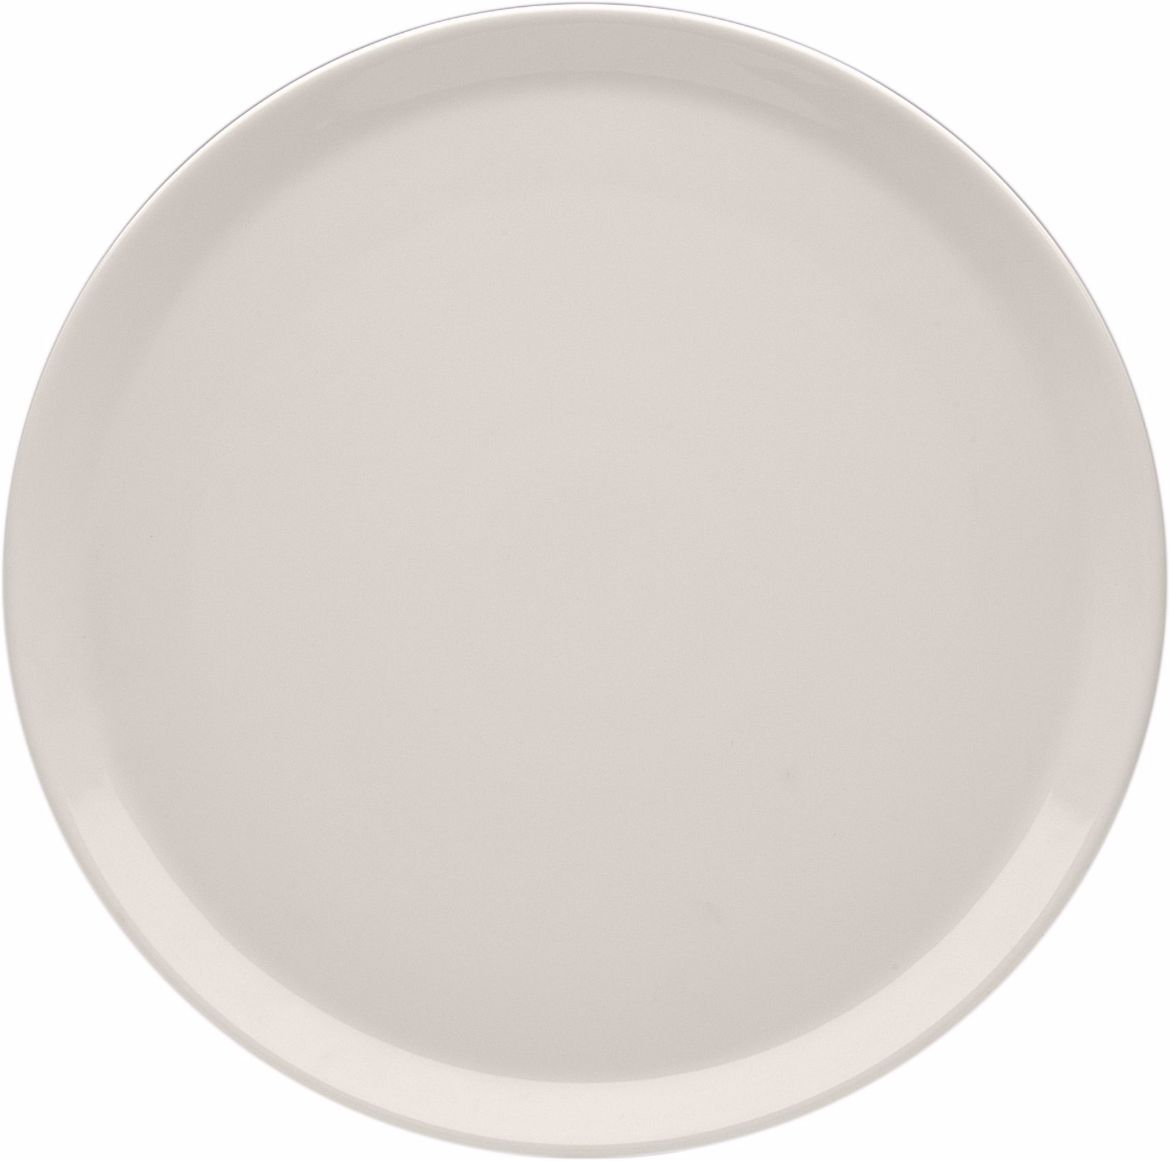 Pizzateller, APS Porcelain, Basics White - Ø32cm